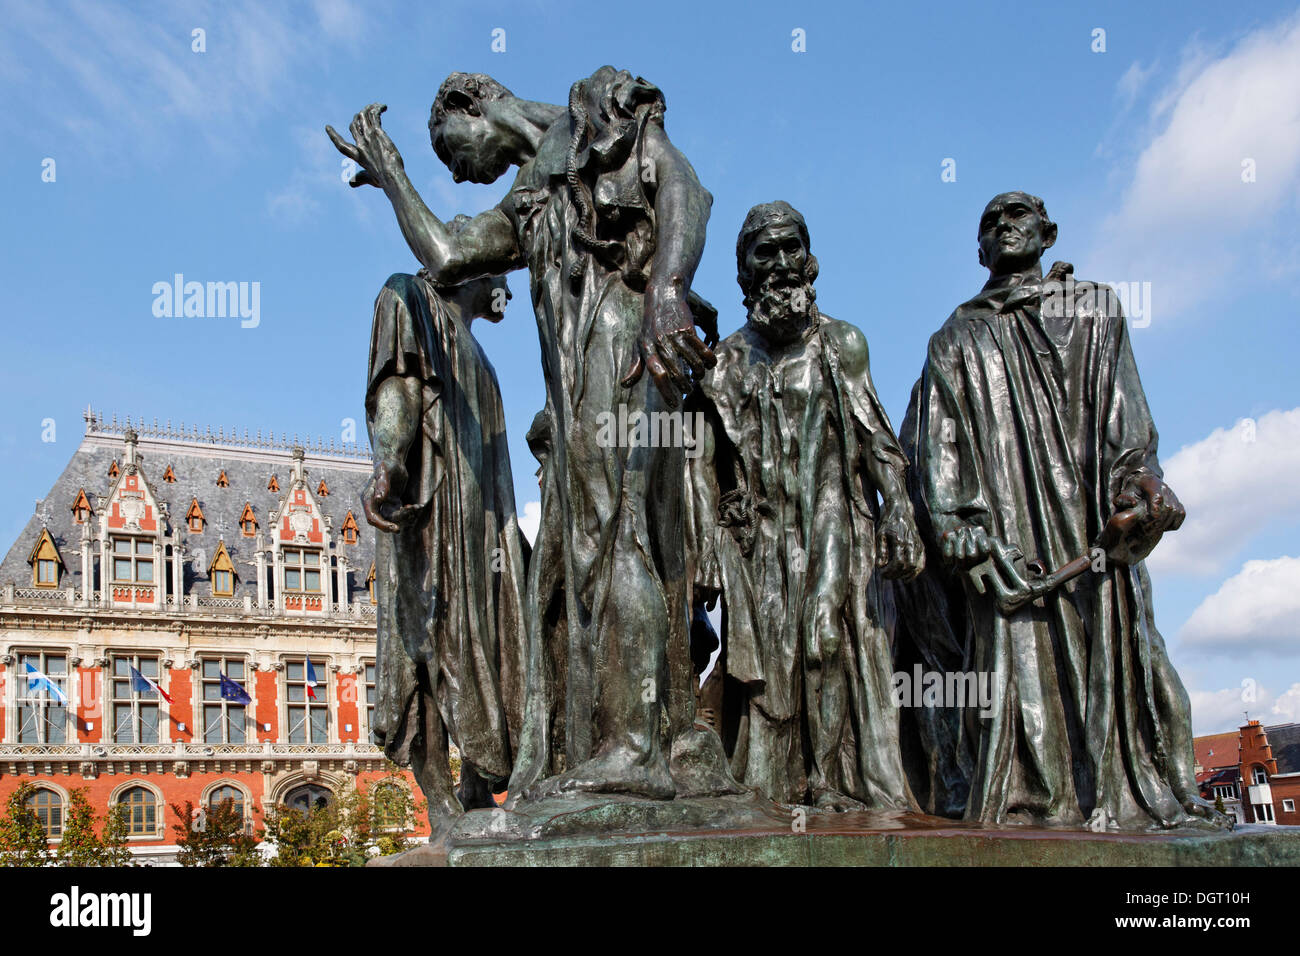 Sculptures by Auguste Rodin, The Burghers of Calais, on the Place de l'Hôtel de Ville square in Calais Stock Photo